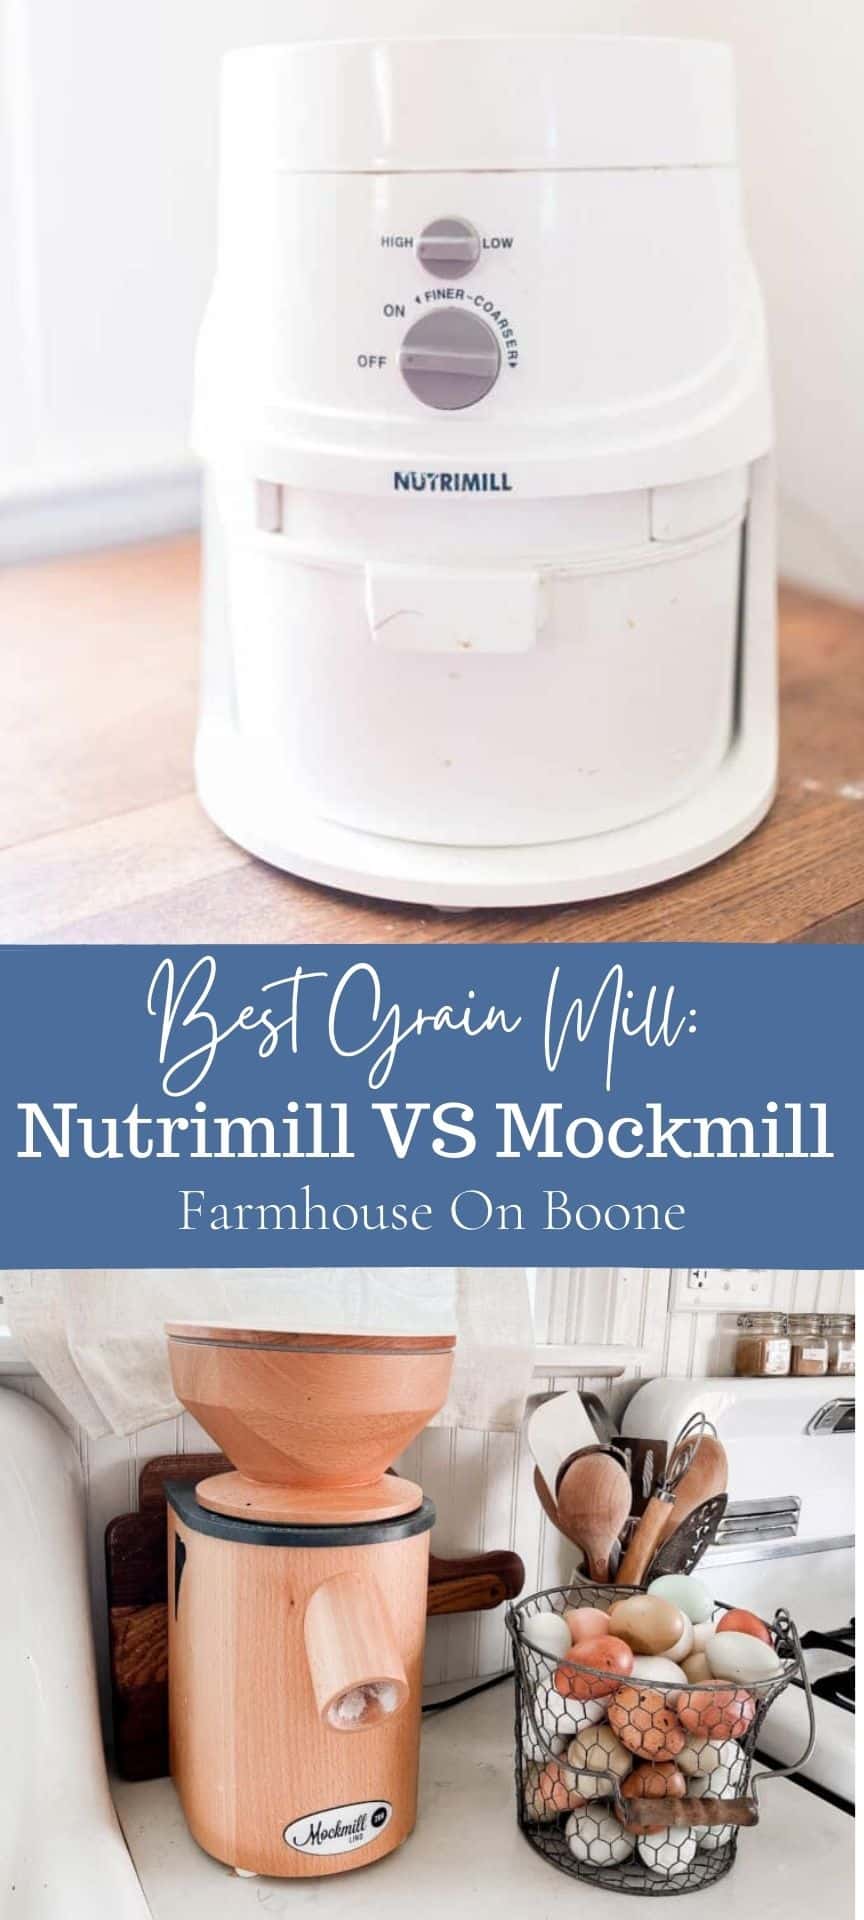 Best Grain Mill: Mockmill vs. Nutrimill - Farmhouse on Boone